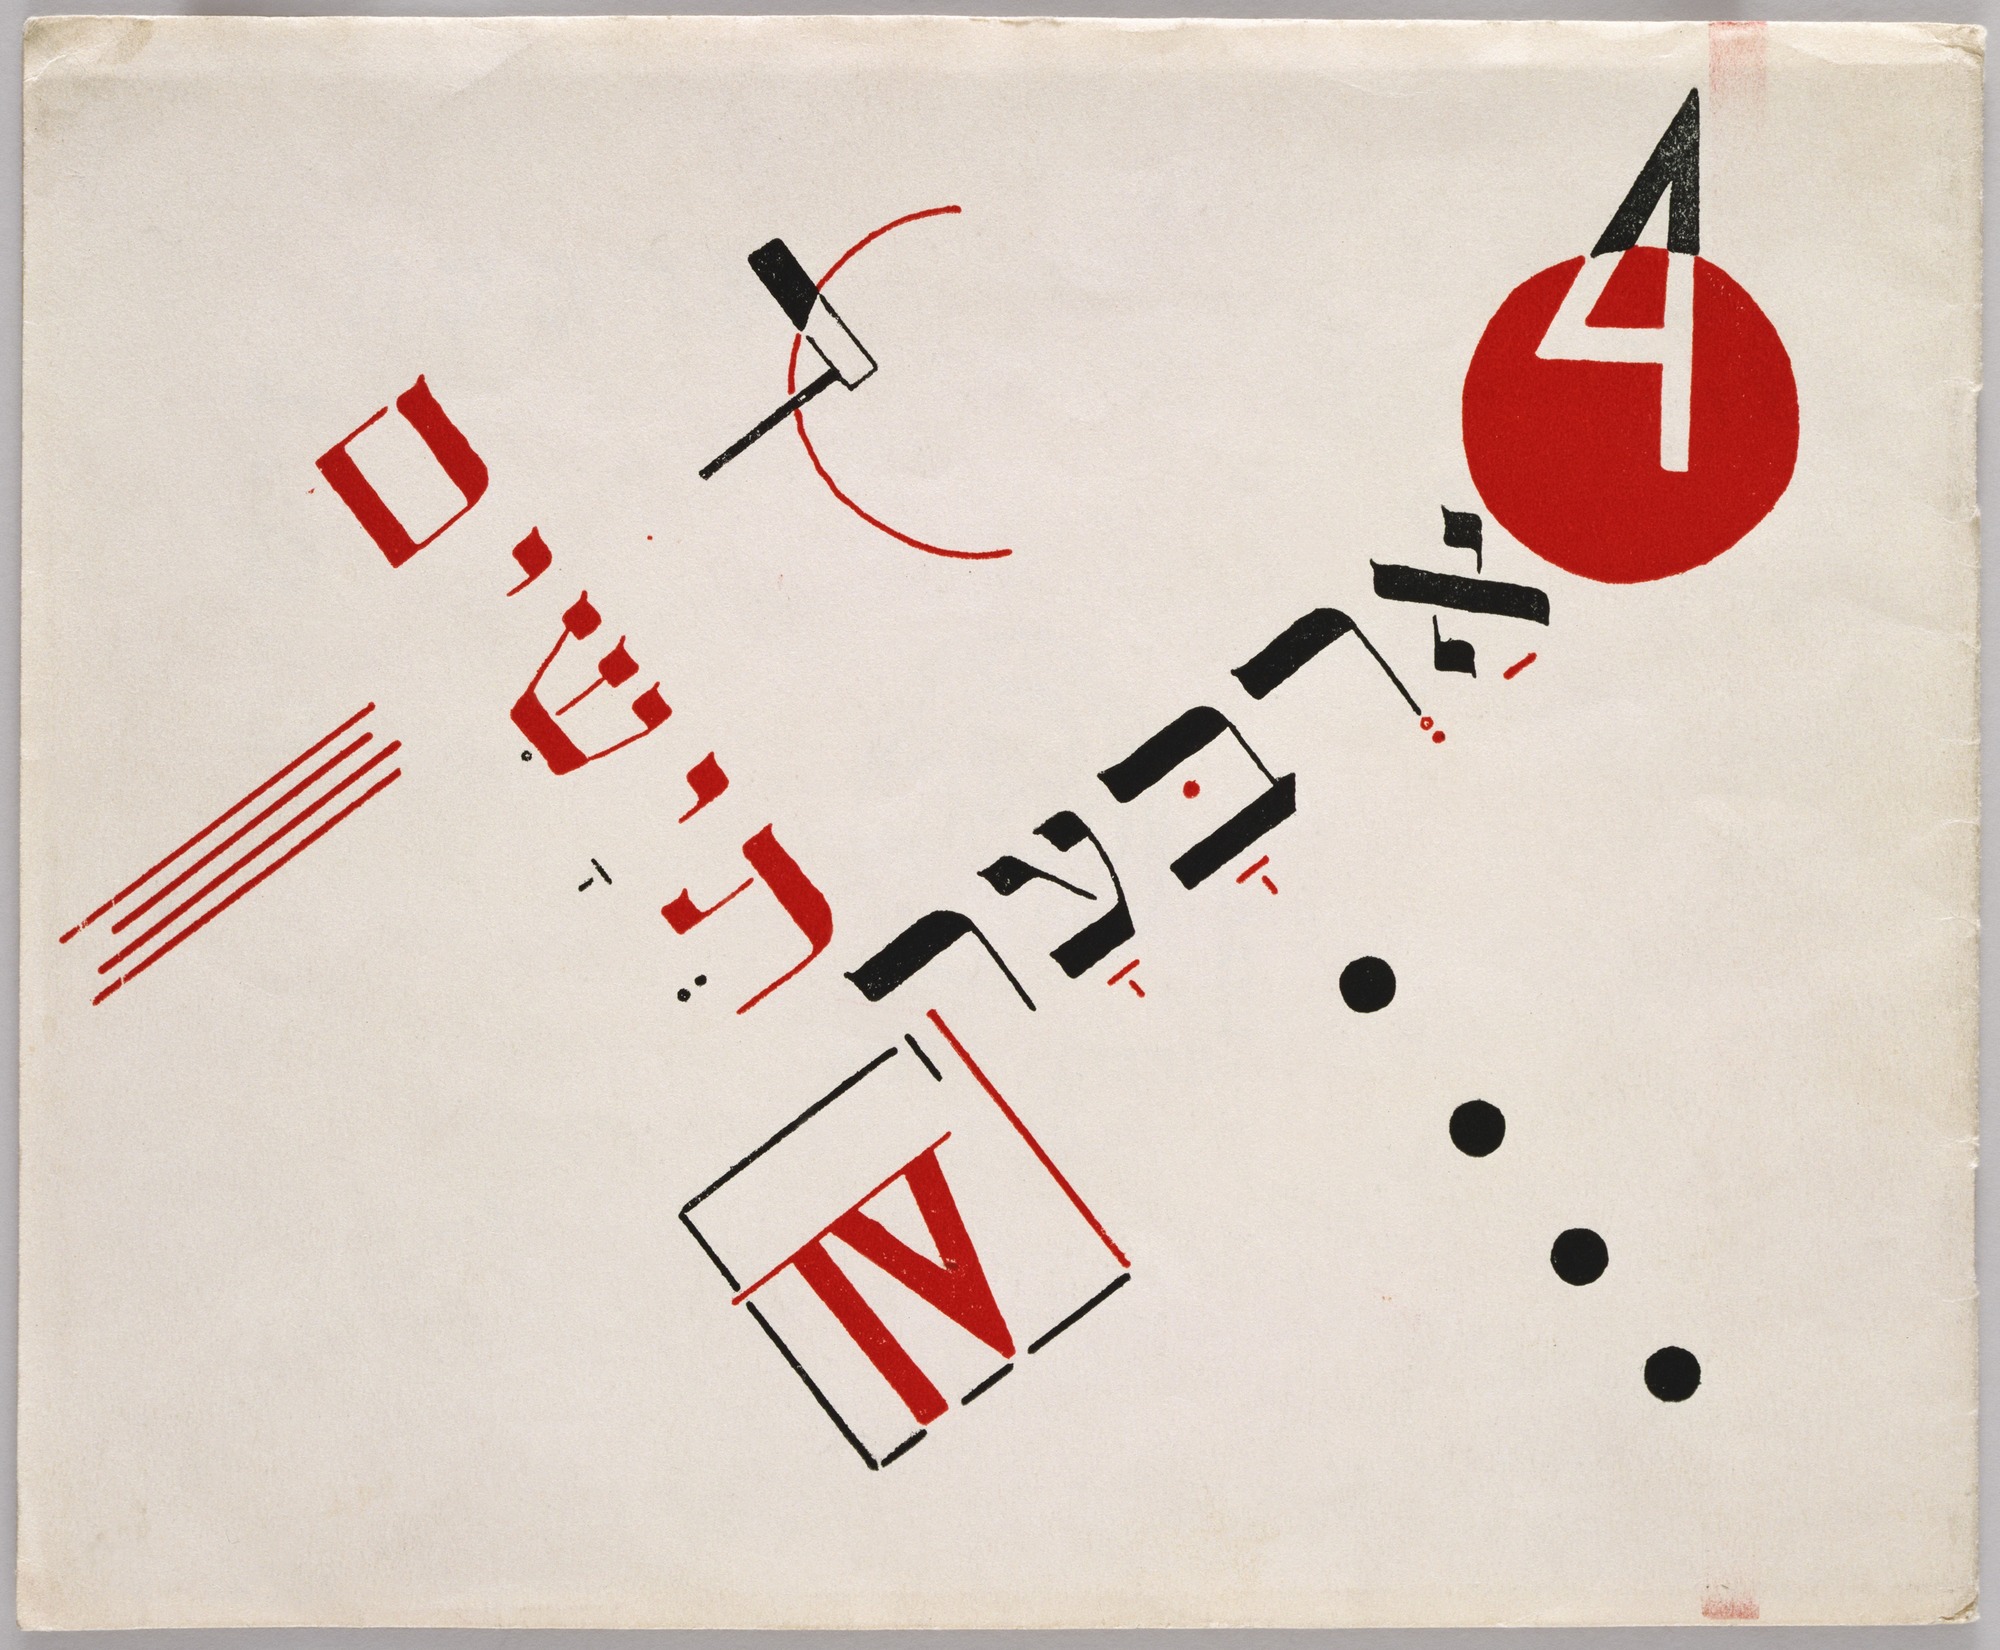 Diseño de El Lissitzky.